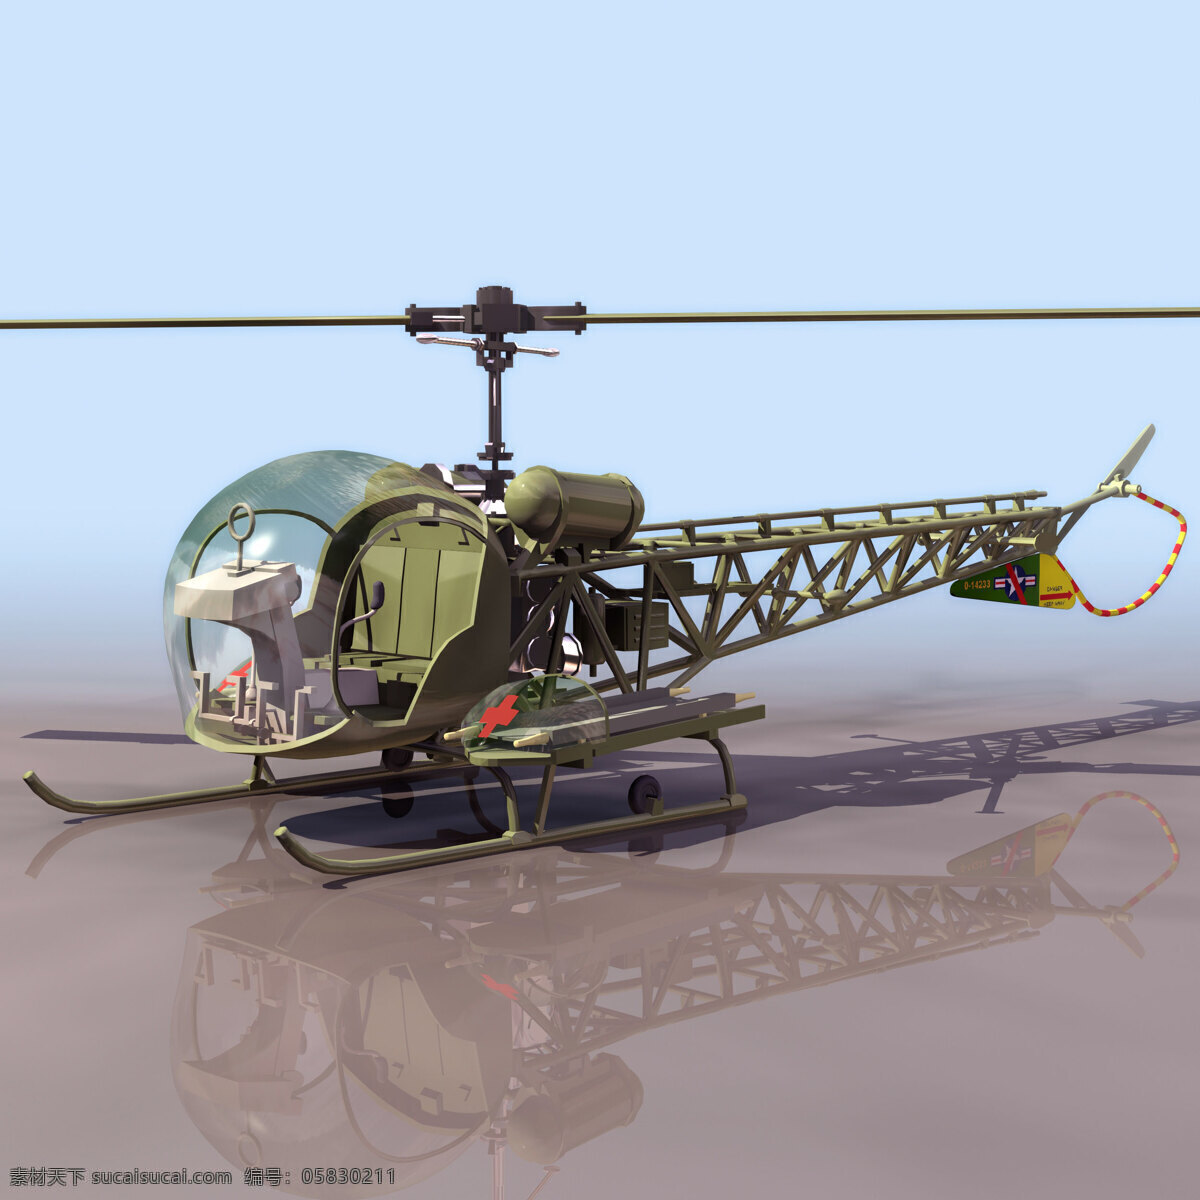 直升机 模型 bellh bellh13 直升机模型 民用飞机 3d模型素材 电器模型